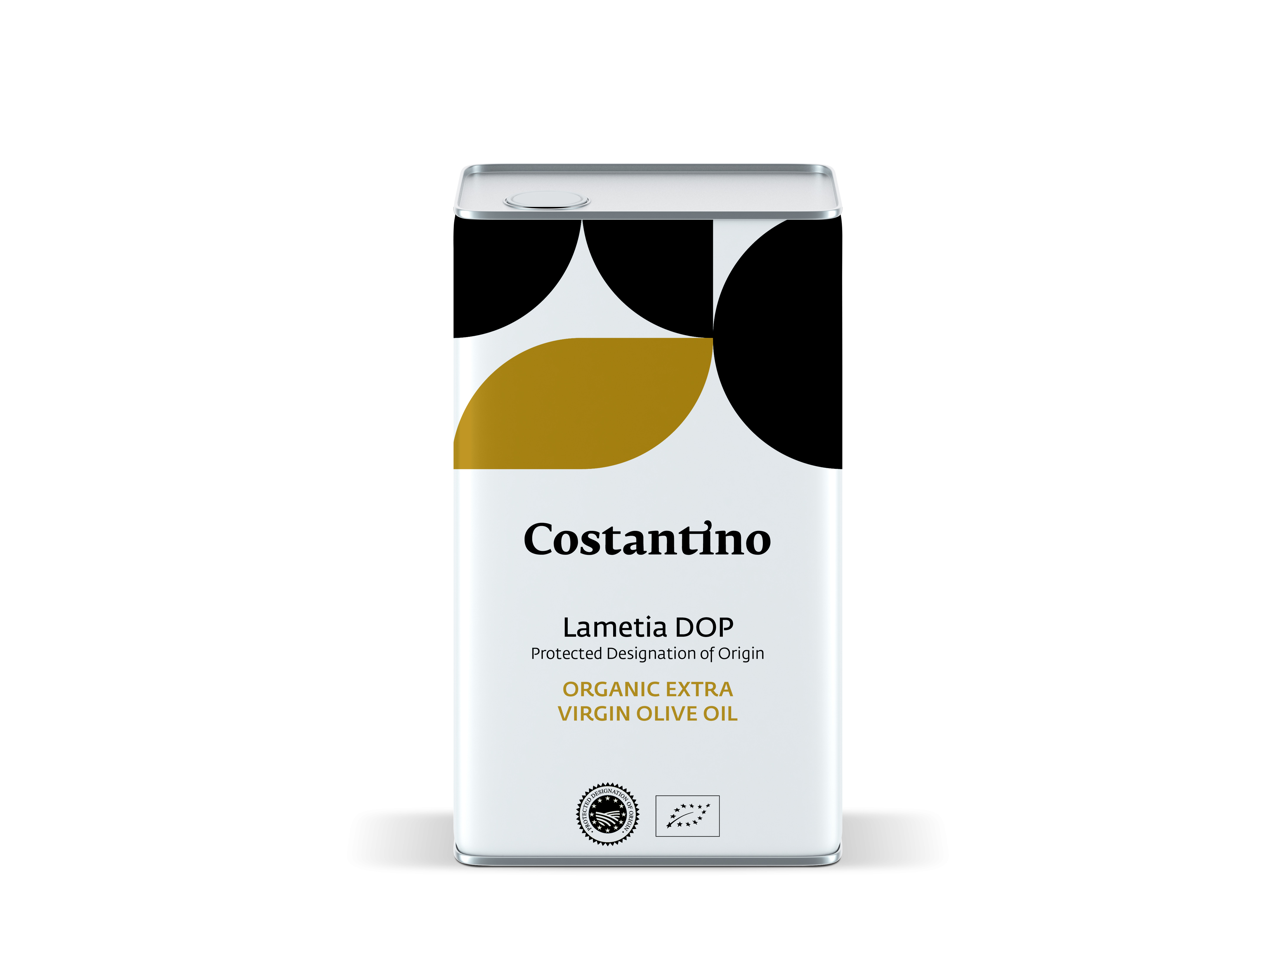 Costantino - Olio Extra Vergine d’Oliva Biologico Dop Lamezia - latta 5l